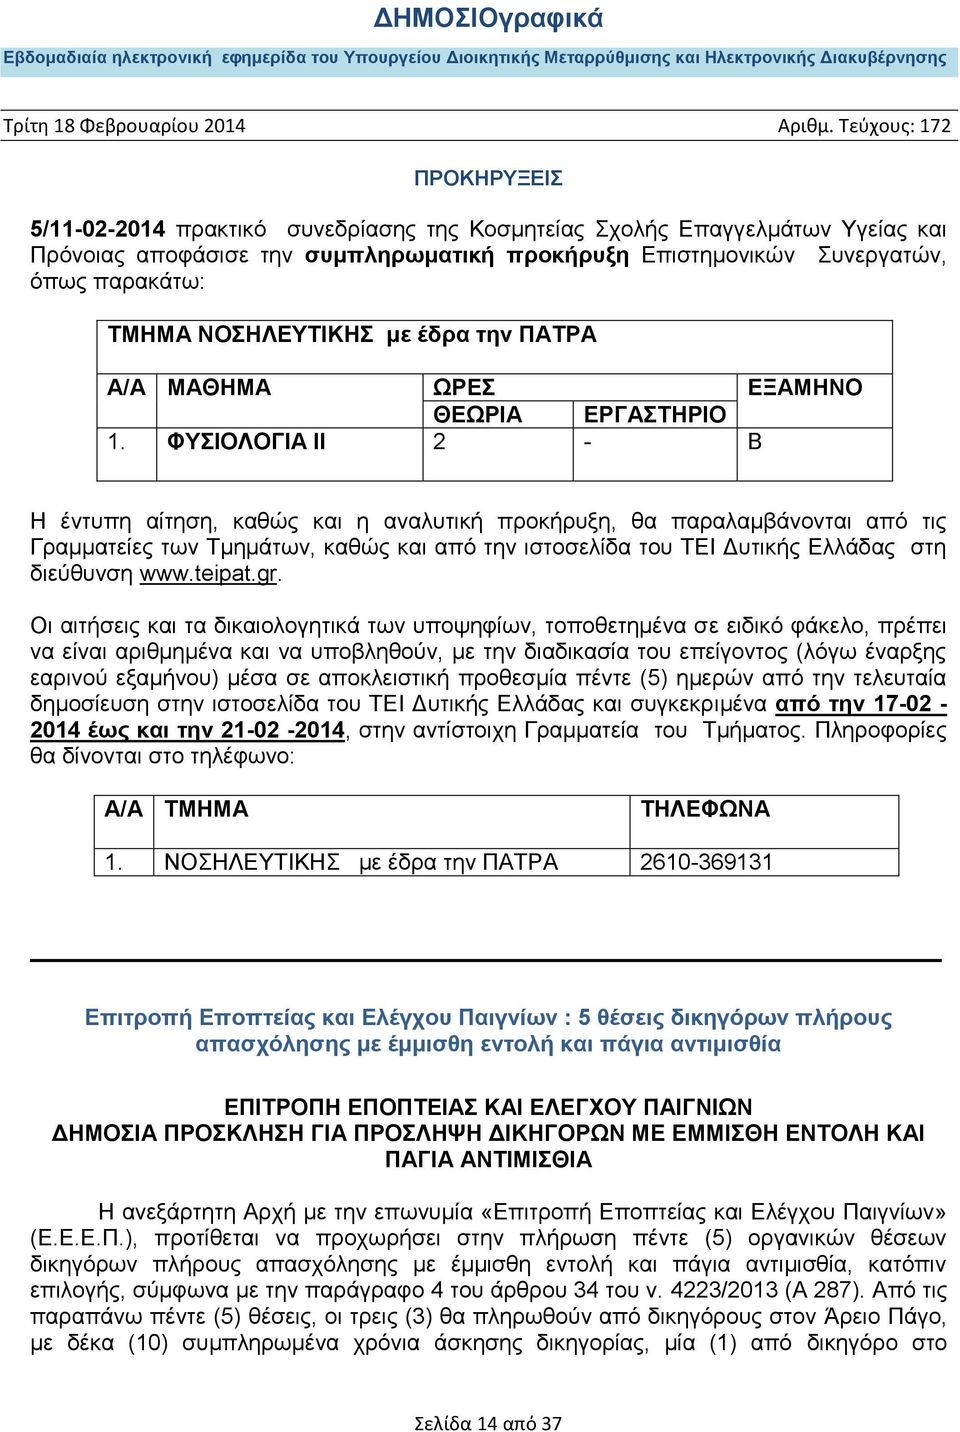 ΦΥΣΙΟΛΟΓΙΑ ΙΙ 2 - Β Η έντυπη αίτηση, καθώς και η αναλυτική προκήρυξη, θα παραλαμβάνονται από τις Γραμματείες των Τμημάτων, καθώς και από την ιστοσελίδα του ΤΕΙ Δυτικής Ελλάδας στη διεύθυνση www.